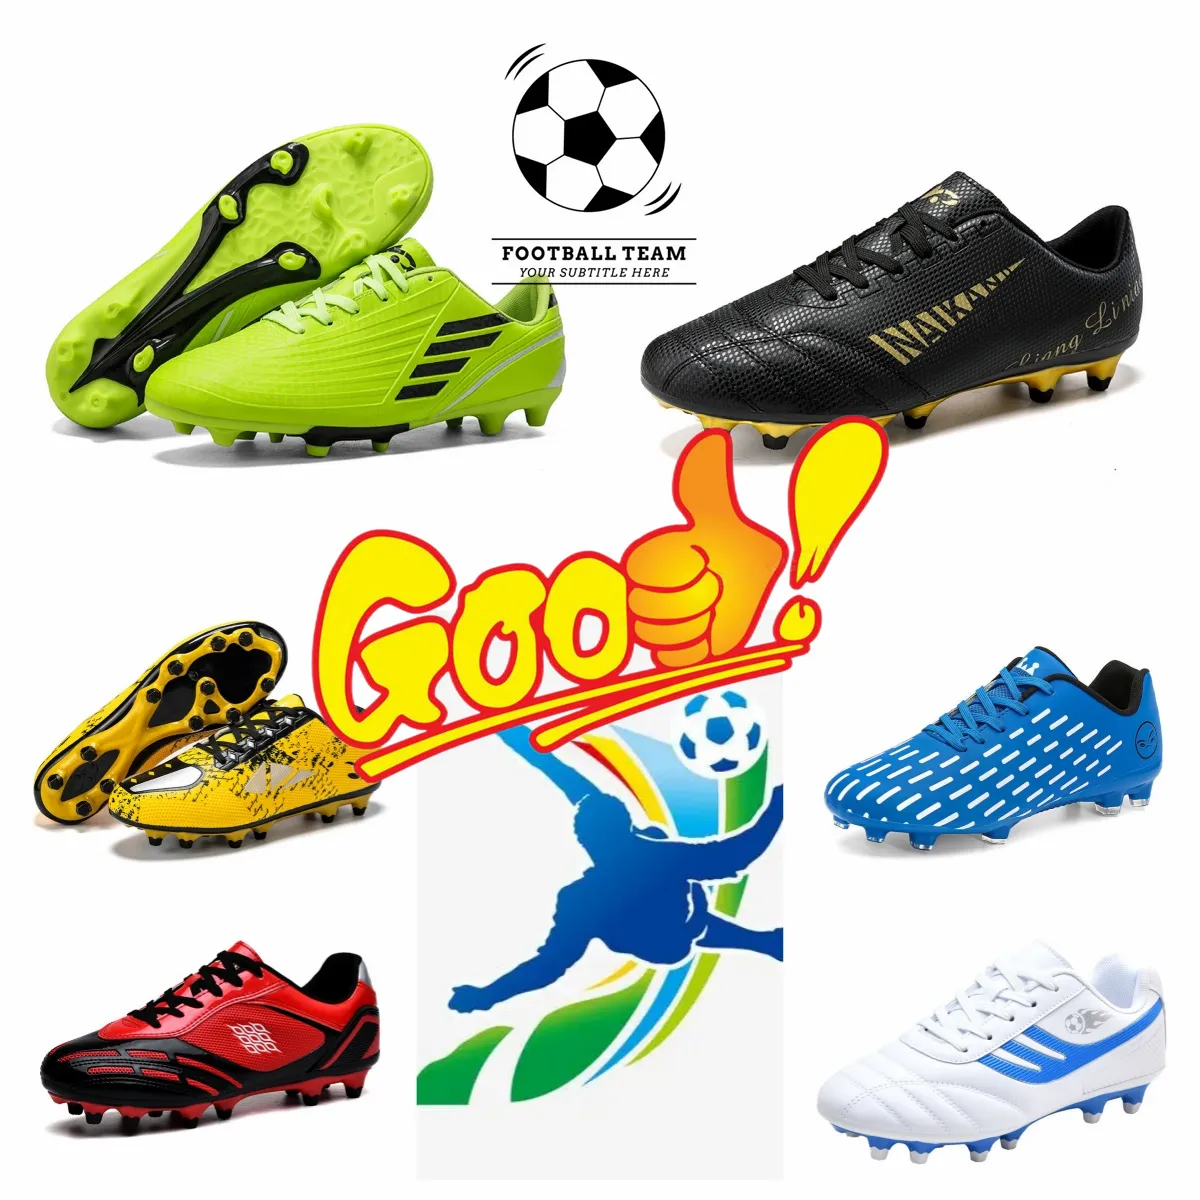 メンズアウトドア品質の高温の血まみれの靴、サッカーブーツ、包まれたエッジエアクッションショック吸収、アンチスリップシューズ35-45 62783